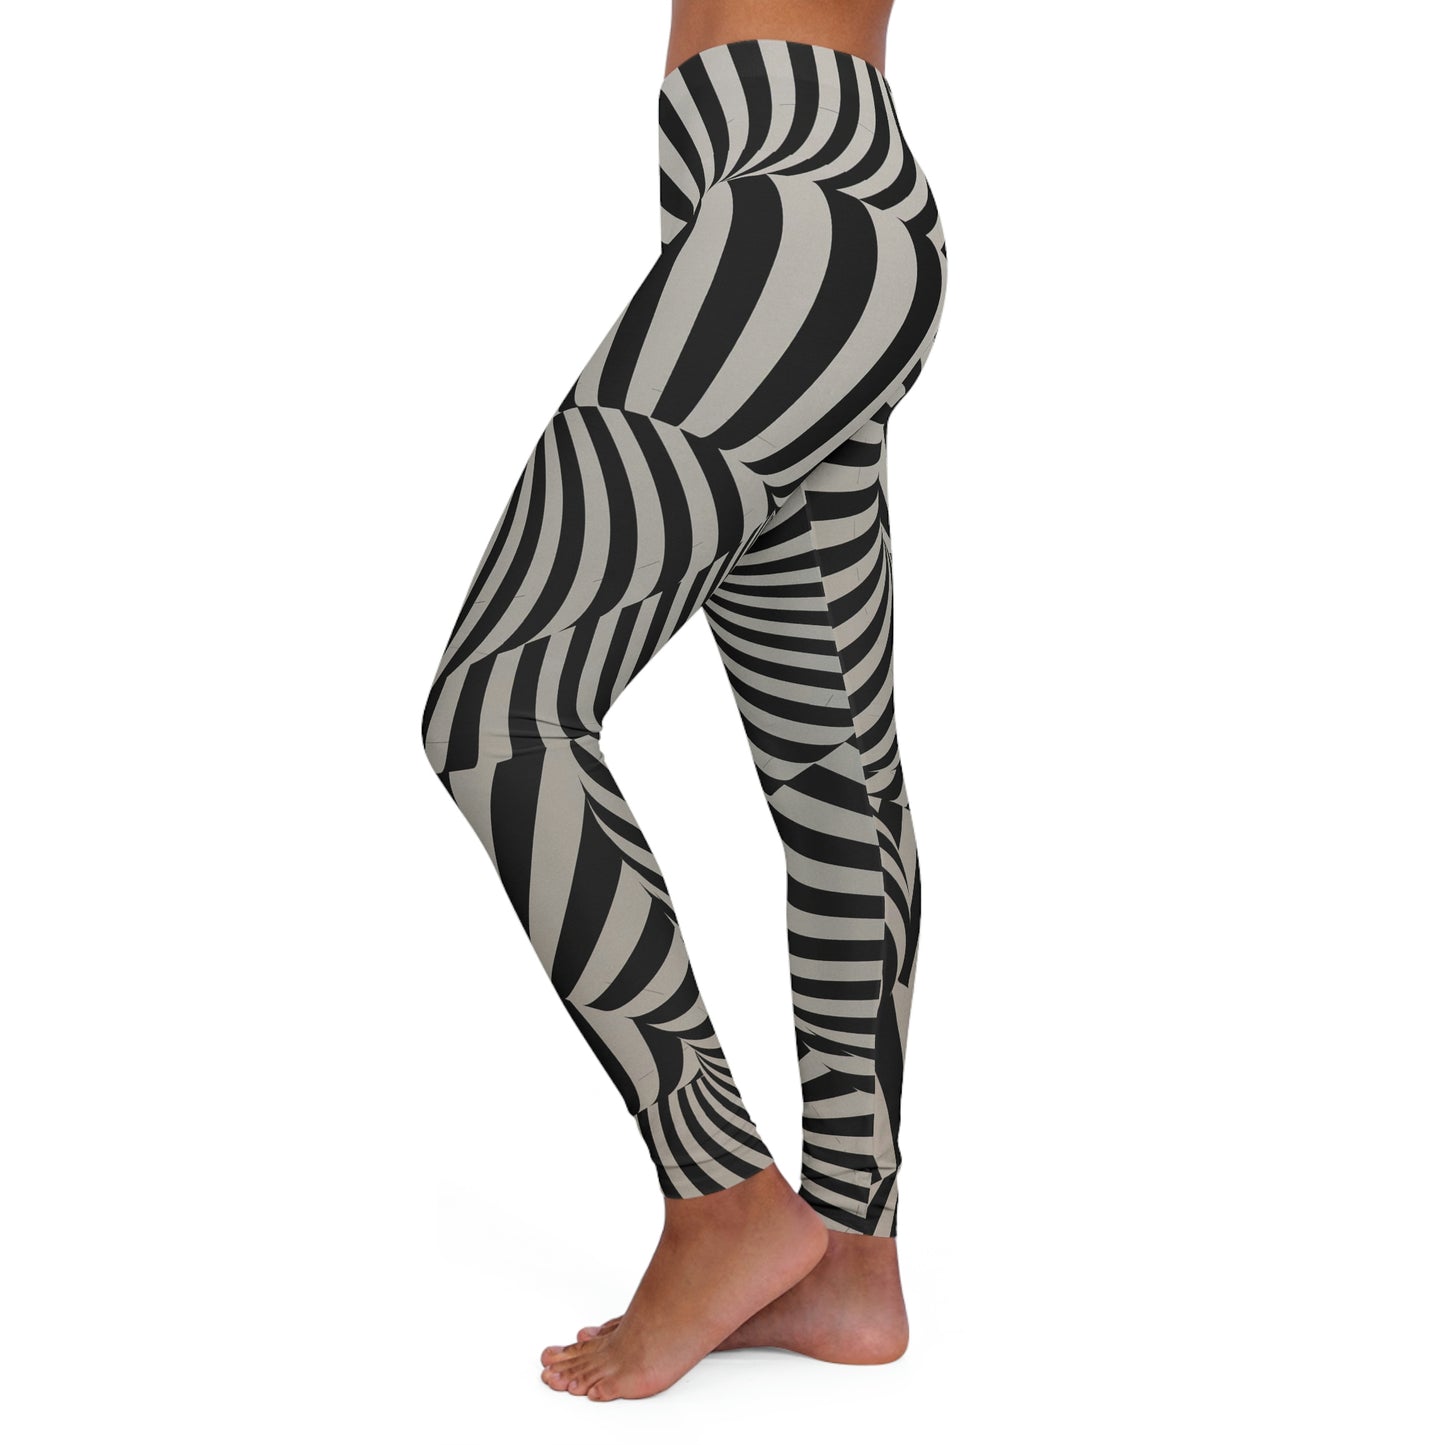 Zebra Women's Spandex Leggings